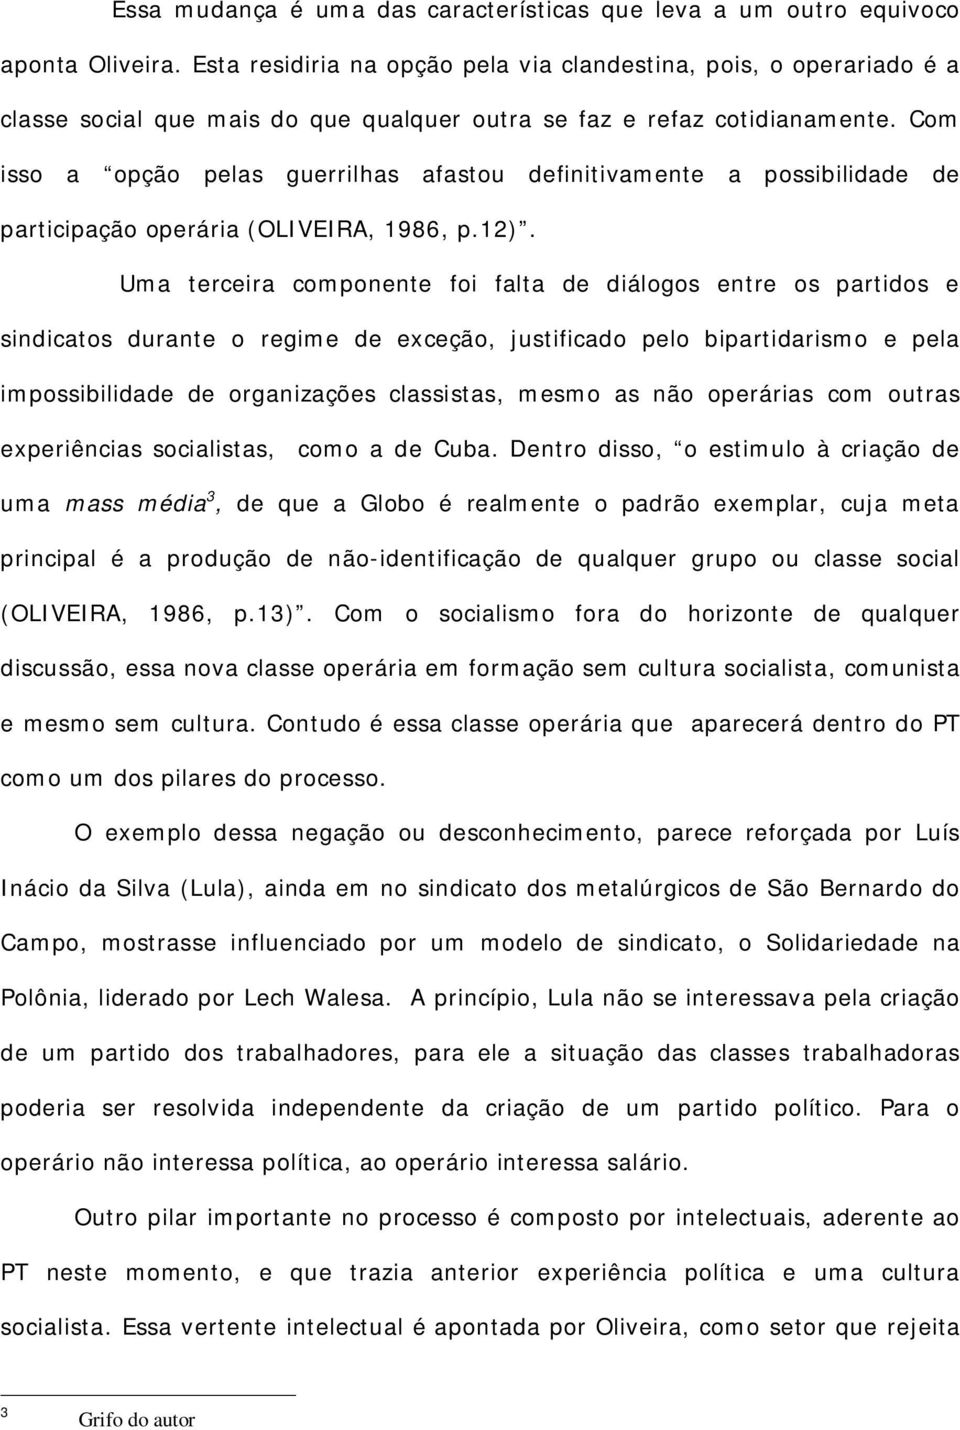 Com isso a opção pelas guerrilhas afastou definitivamente a possibilidade de participação operária (OLIVEIRA, 1986, p.12).